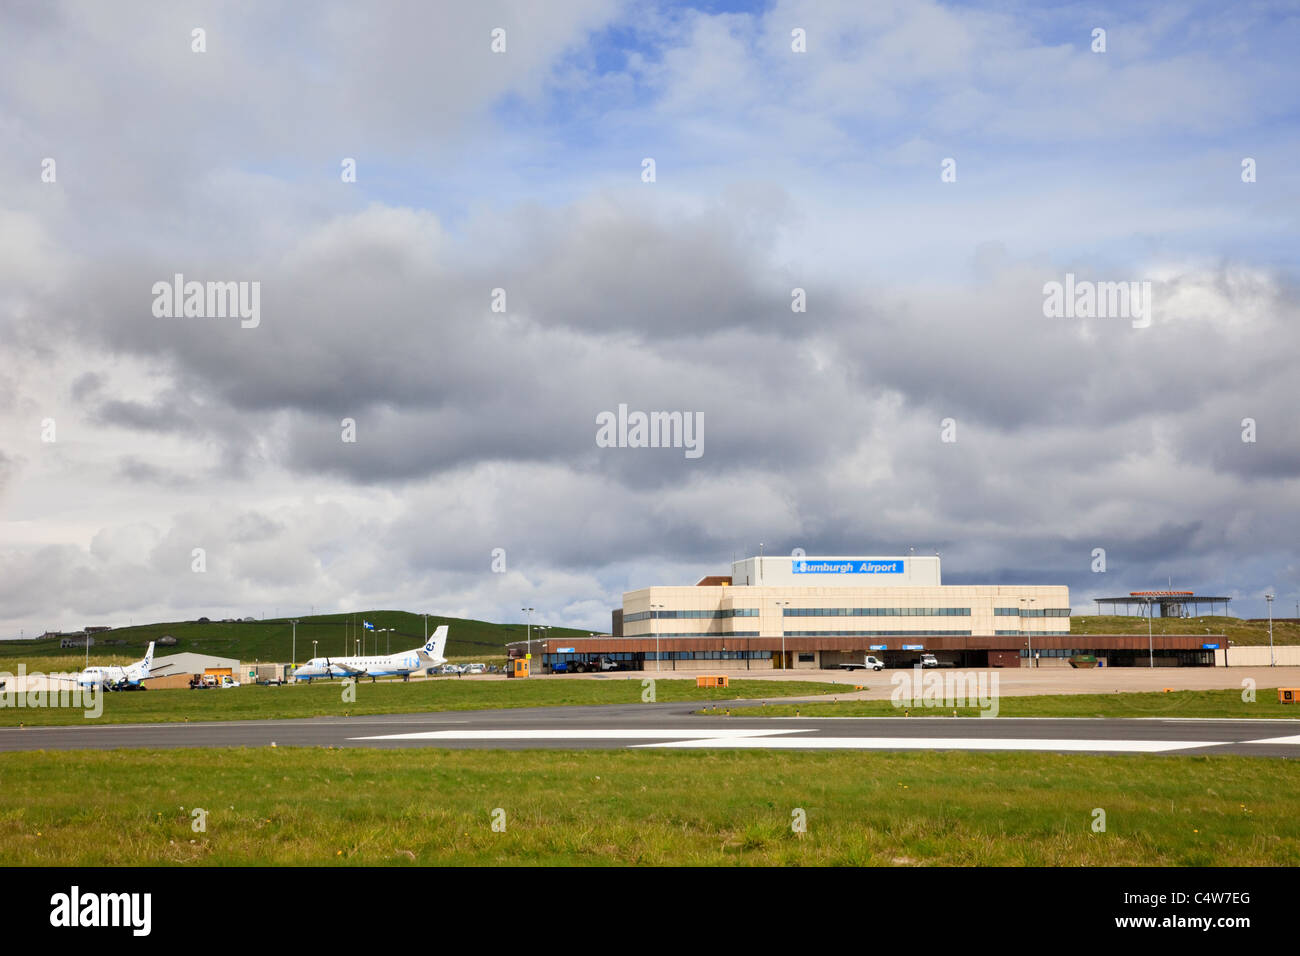 Aéroport de Sumburgh à la pointe sud du continent Shetlands. Sumburgh, îles Shetland, Écosse, Royaume-Uni Banque D'Images